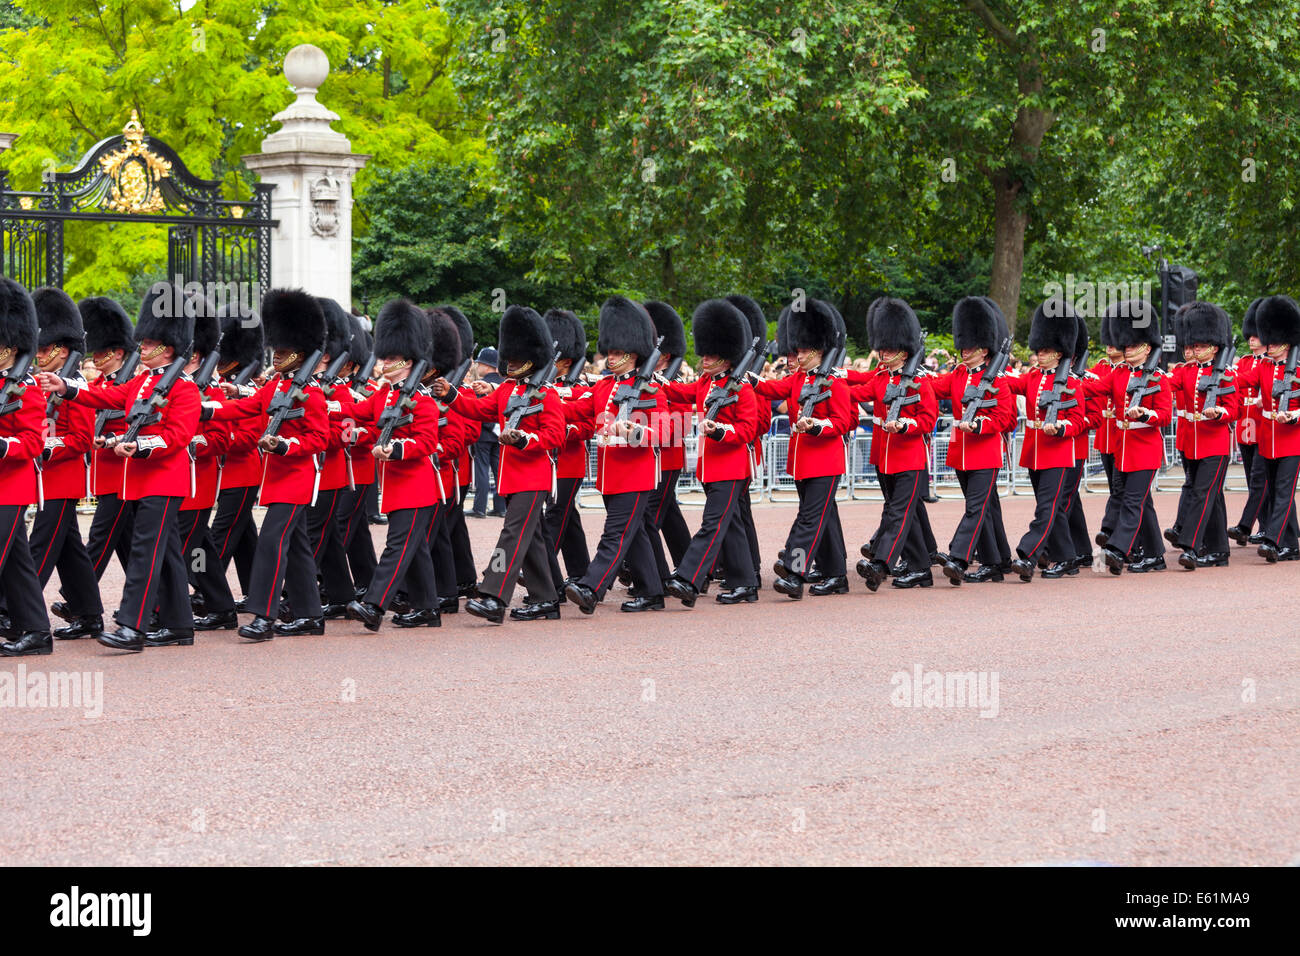 Grenadier Foot Guards of the Queen's Guard che ha marciato sul Mall a Londra durante la sfilata Trooping the Color, Londra, Inghilterra, Regno Unito Foto Stock